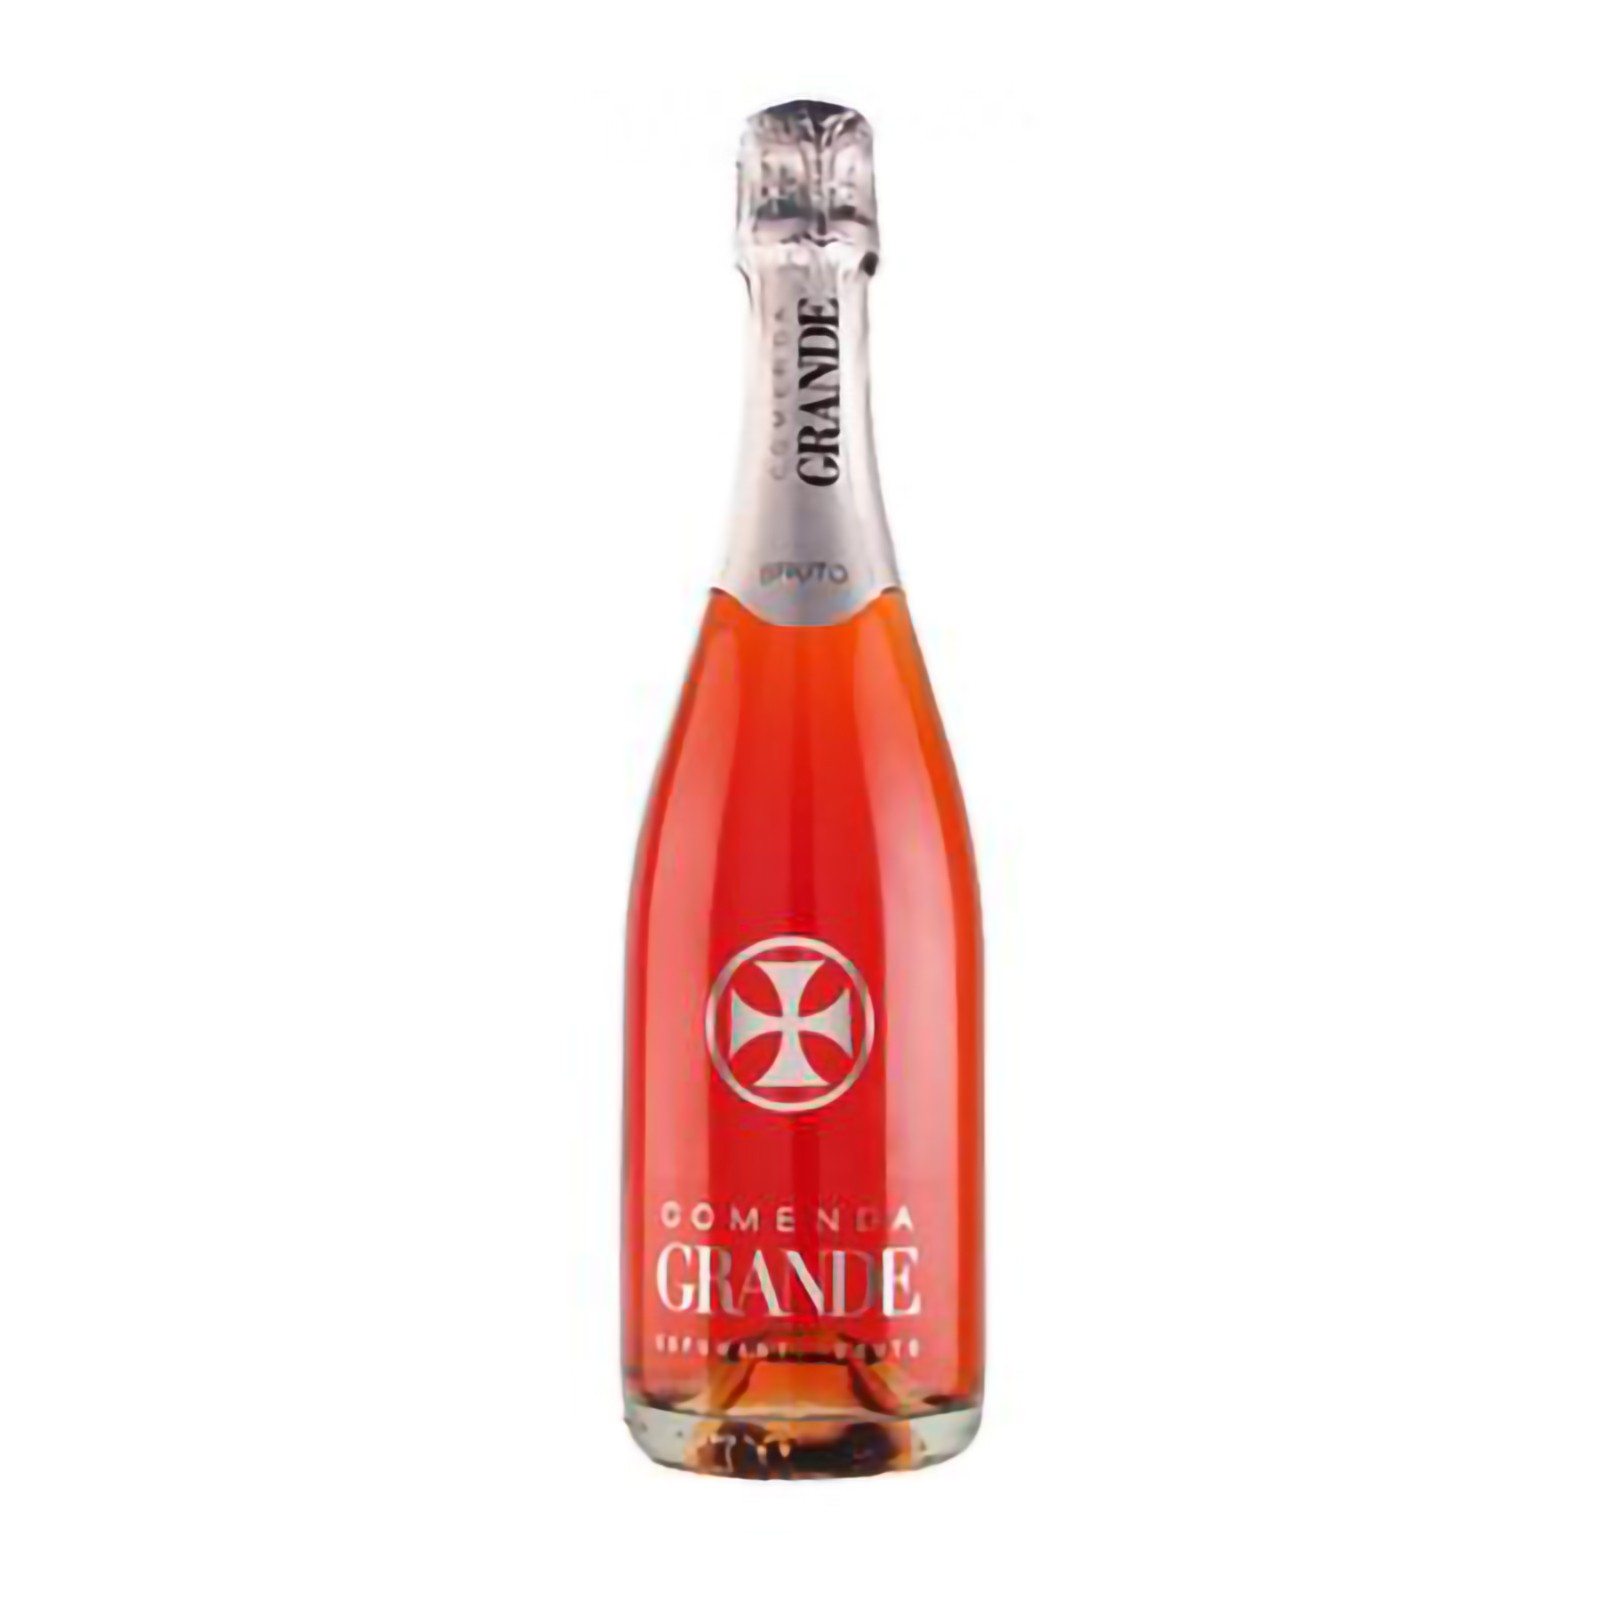 Comenda Grande Rosé Sparkling 2014